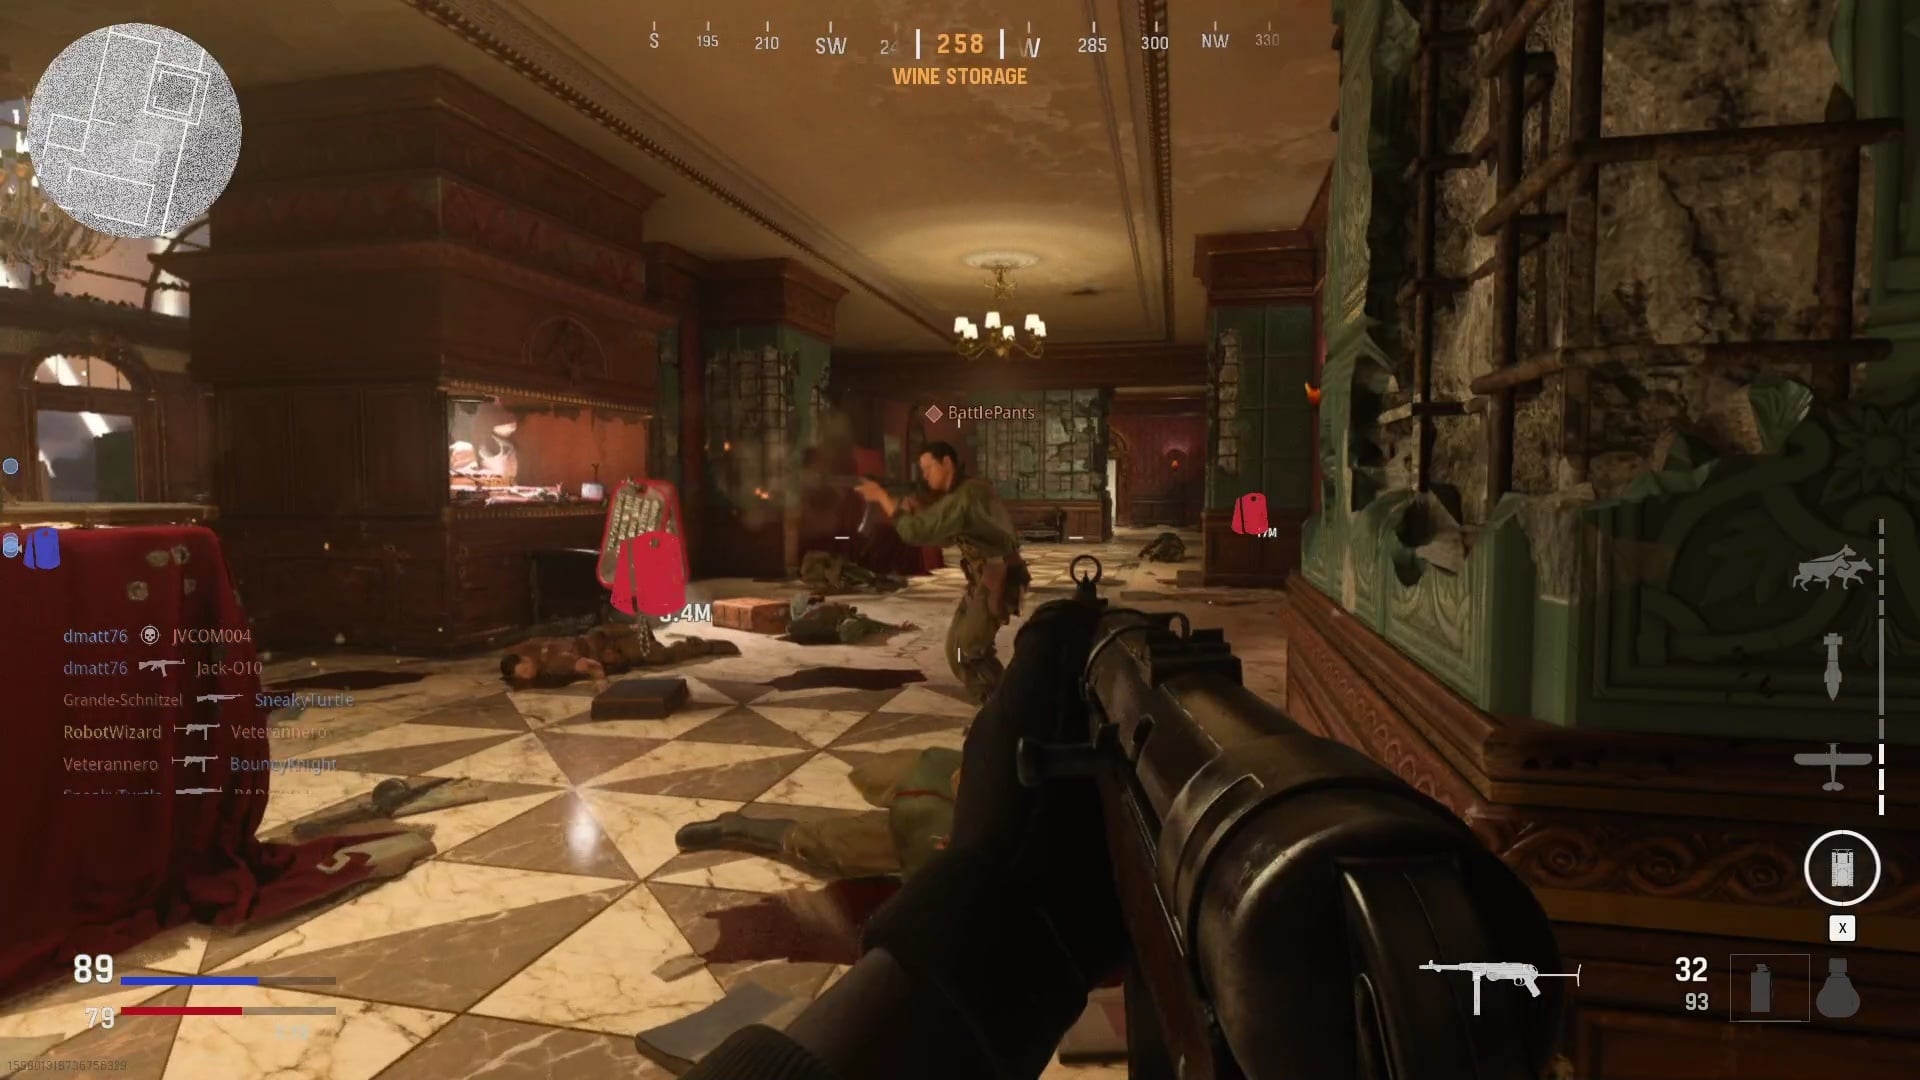 Contacto inimigo a cada segundo: No Hotel Royale em modo Blitz com muitos jogadores, é uma verdadeira pressa